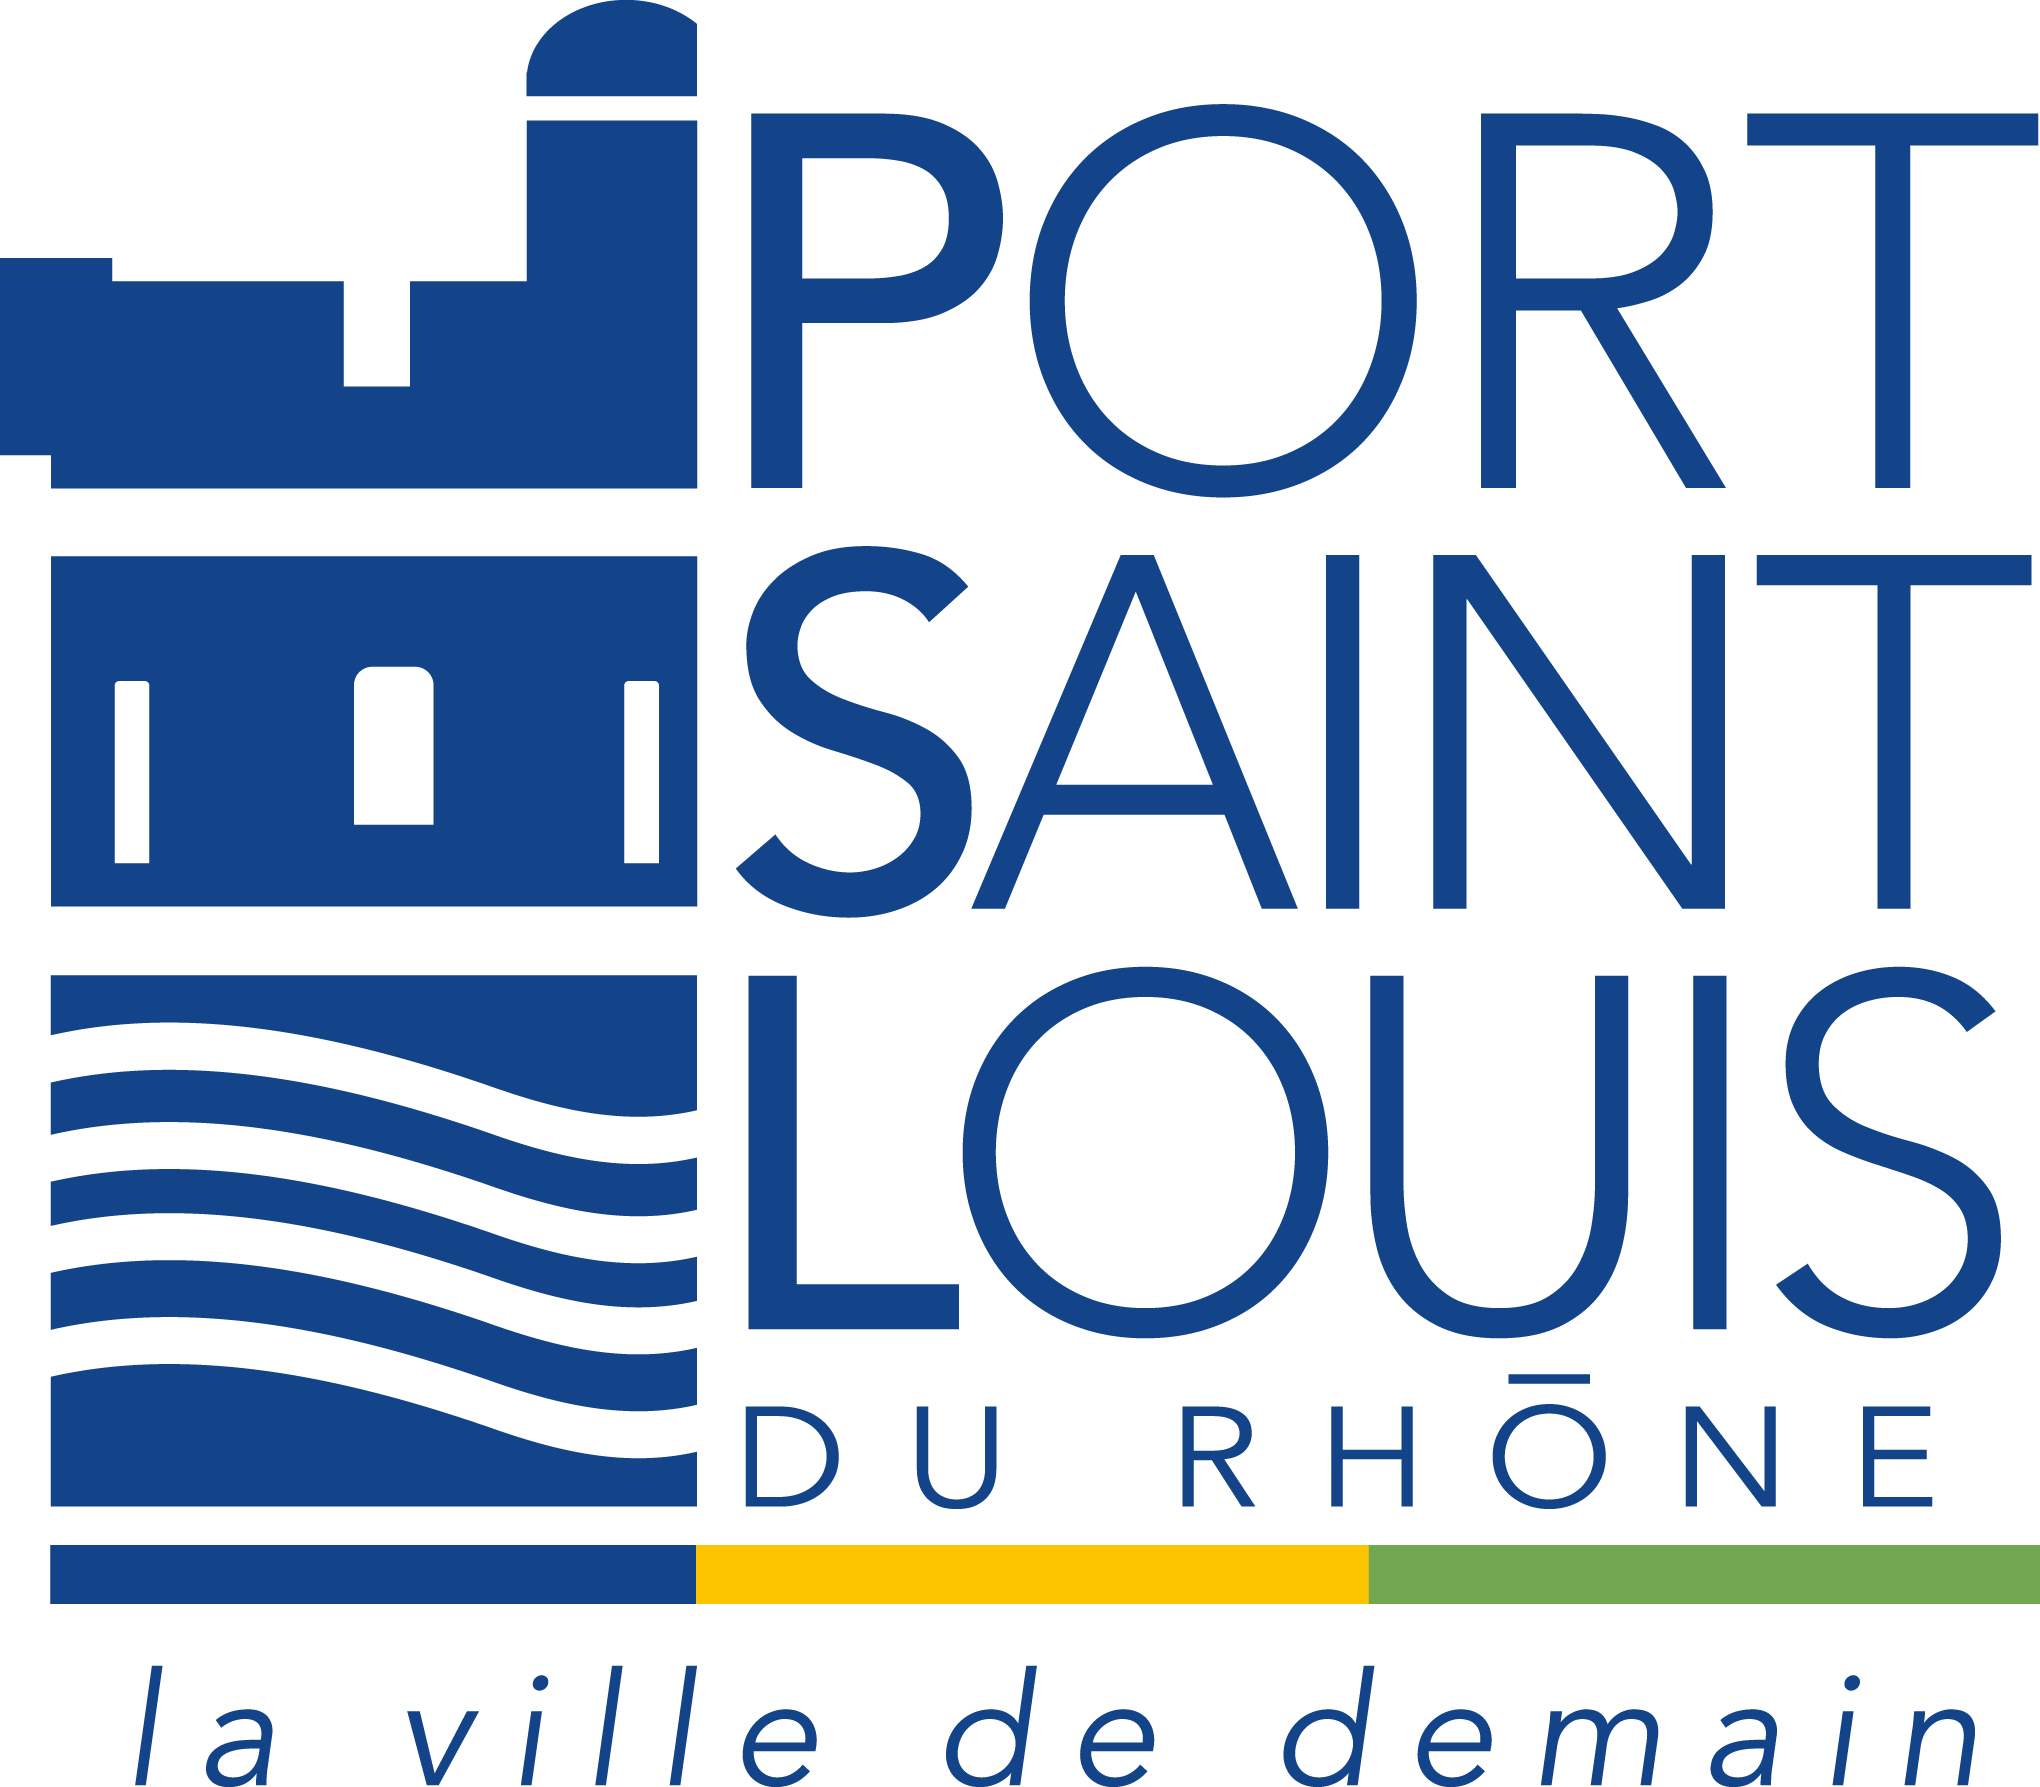 Office de Tourisme de Port-Saint-Louis-du-Rhône logo